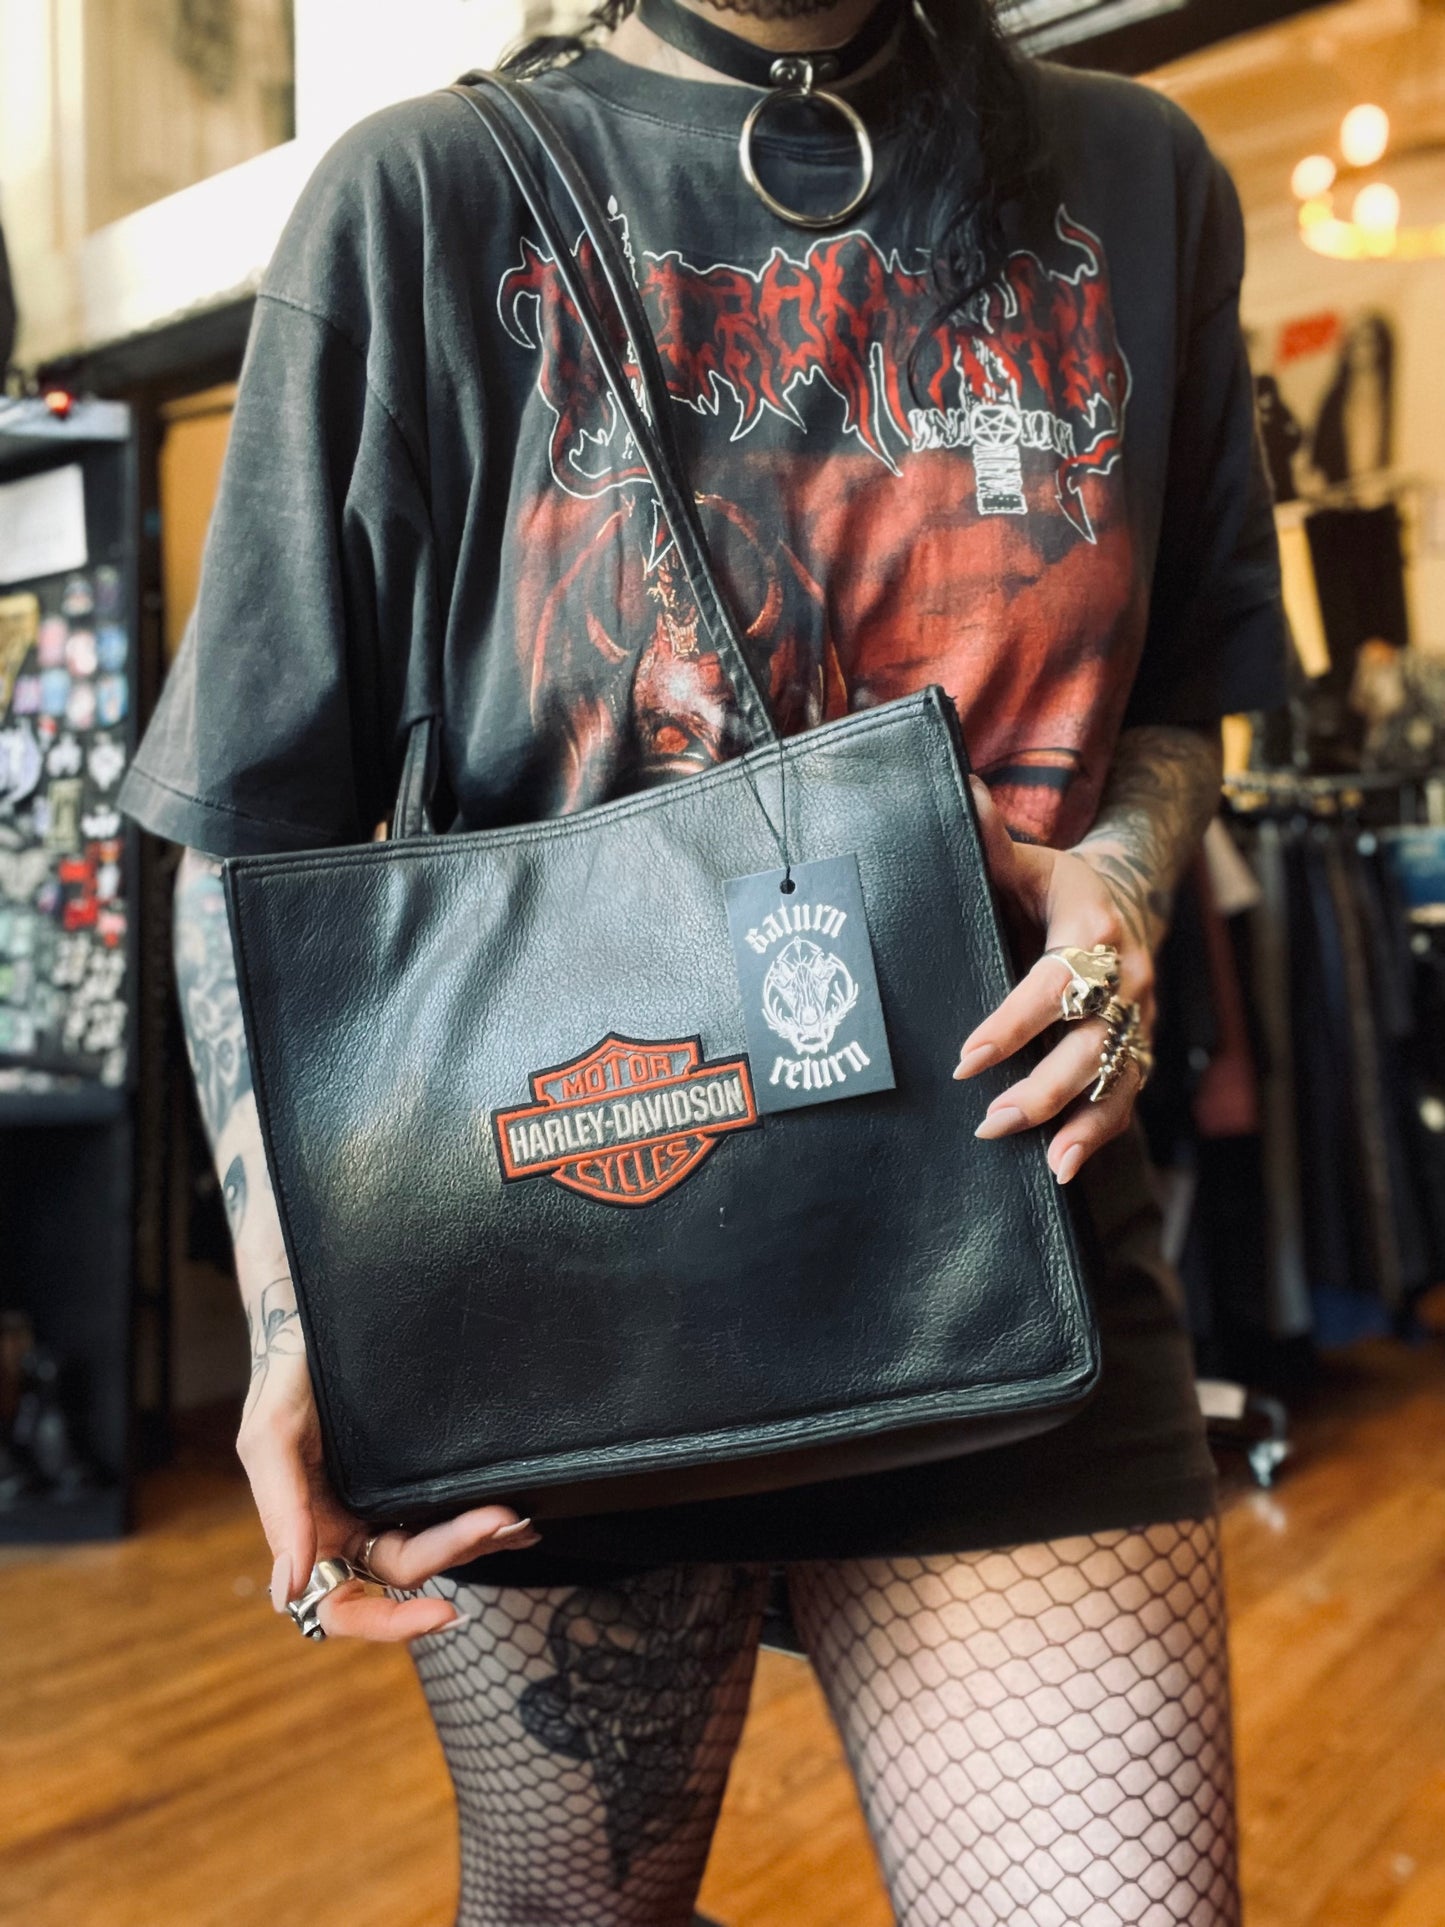 Harley-Davidson Orange Shoulder Bags for Women